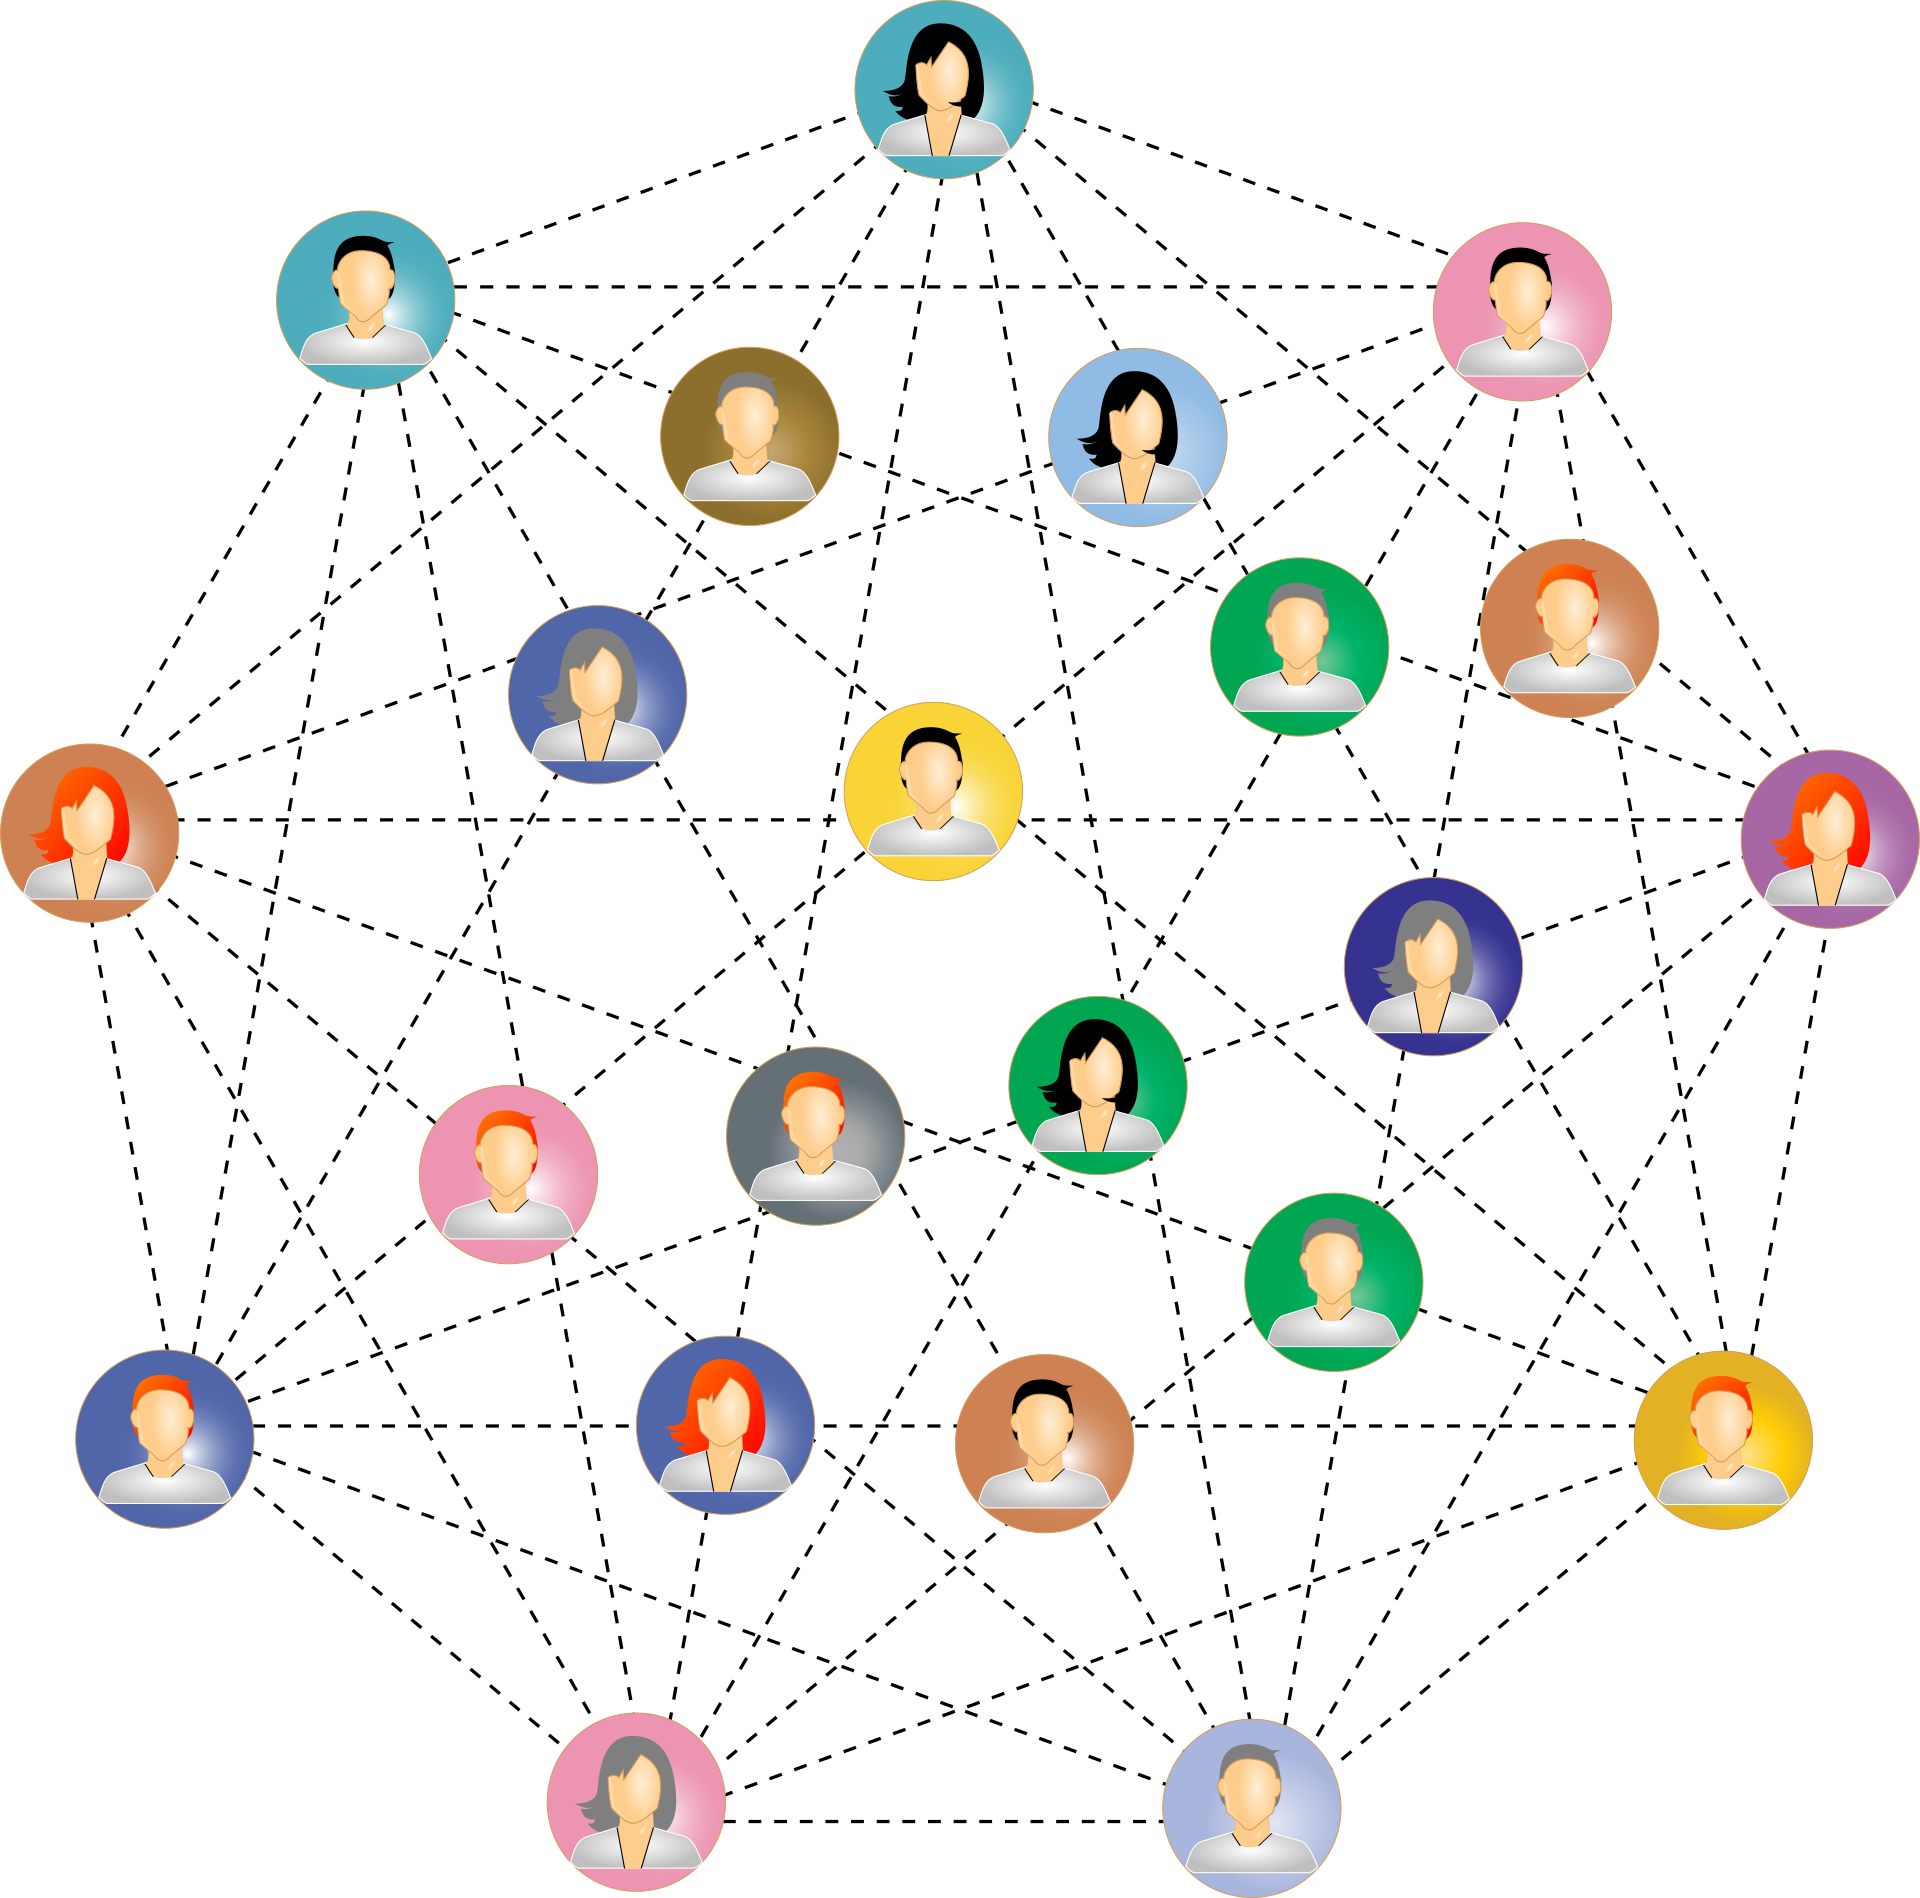 imágenes de personas interconectadas por una red de puntos